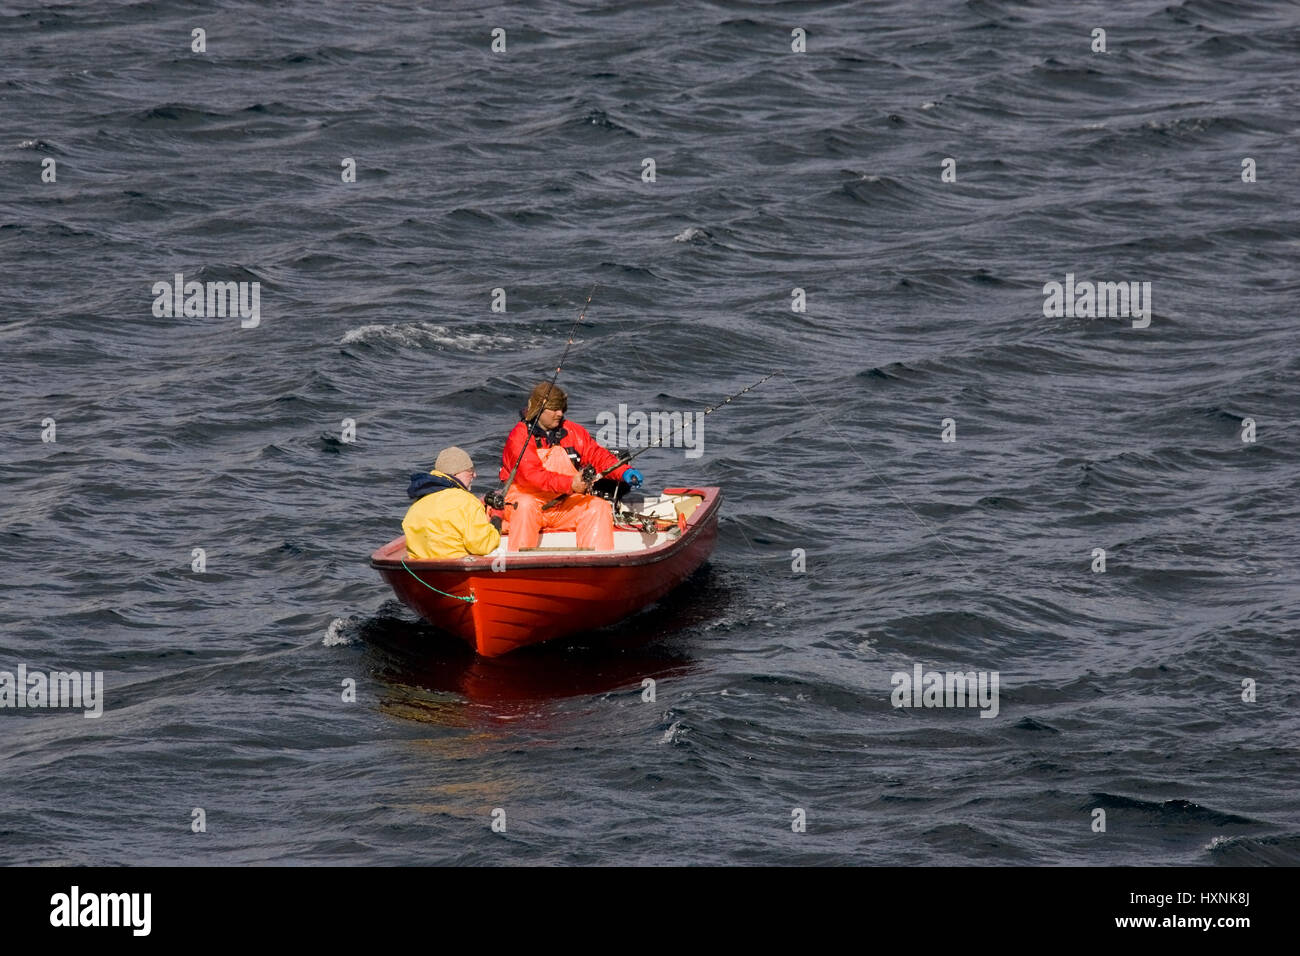 Fscher in the red fishing boat, Fscher im roten Fischerboot  Sakrisoy, Lofoten Stock Photo